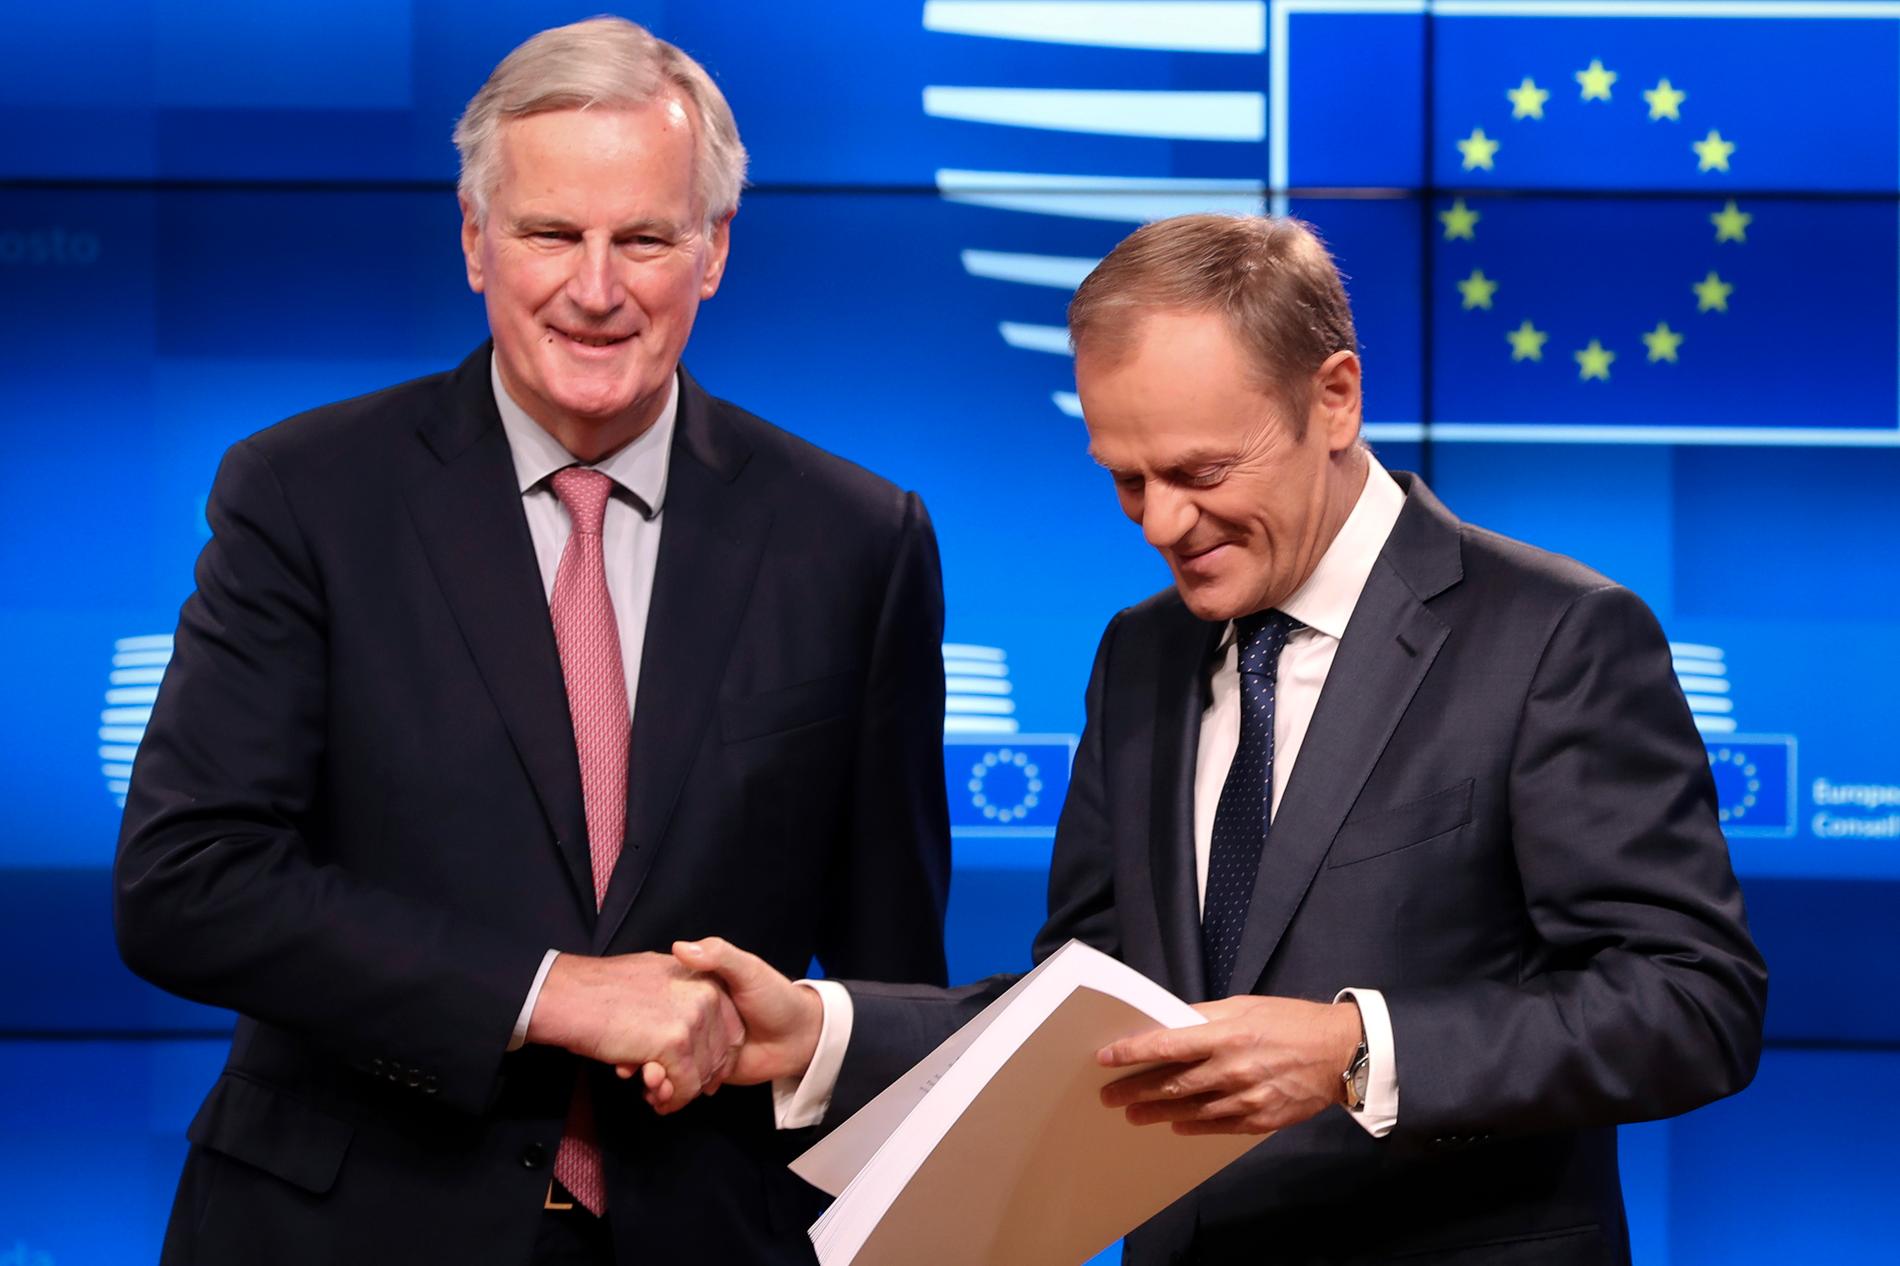 EU:s chefsförhandlare om brexit, Michel Barnier (till vänster), lämnar över utkastet till brexitavtalet till EU:s permanente rådsordförande Donald Tusk under deras presskonferens i Bryssel på torsdagen.